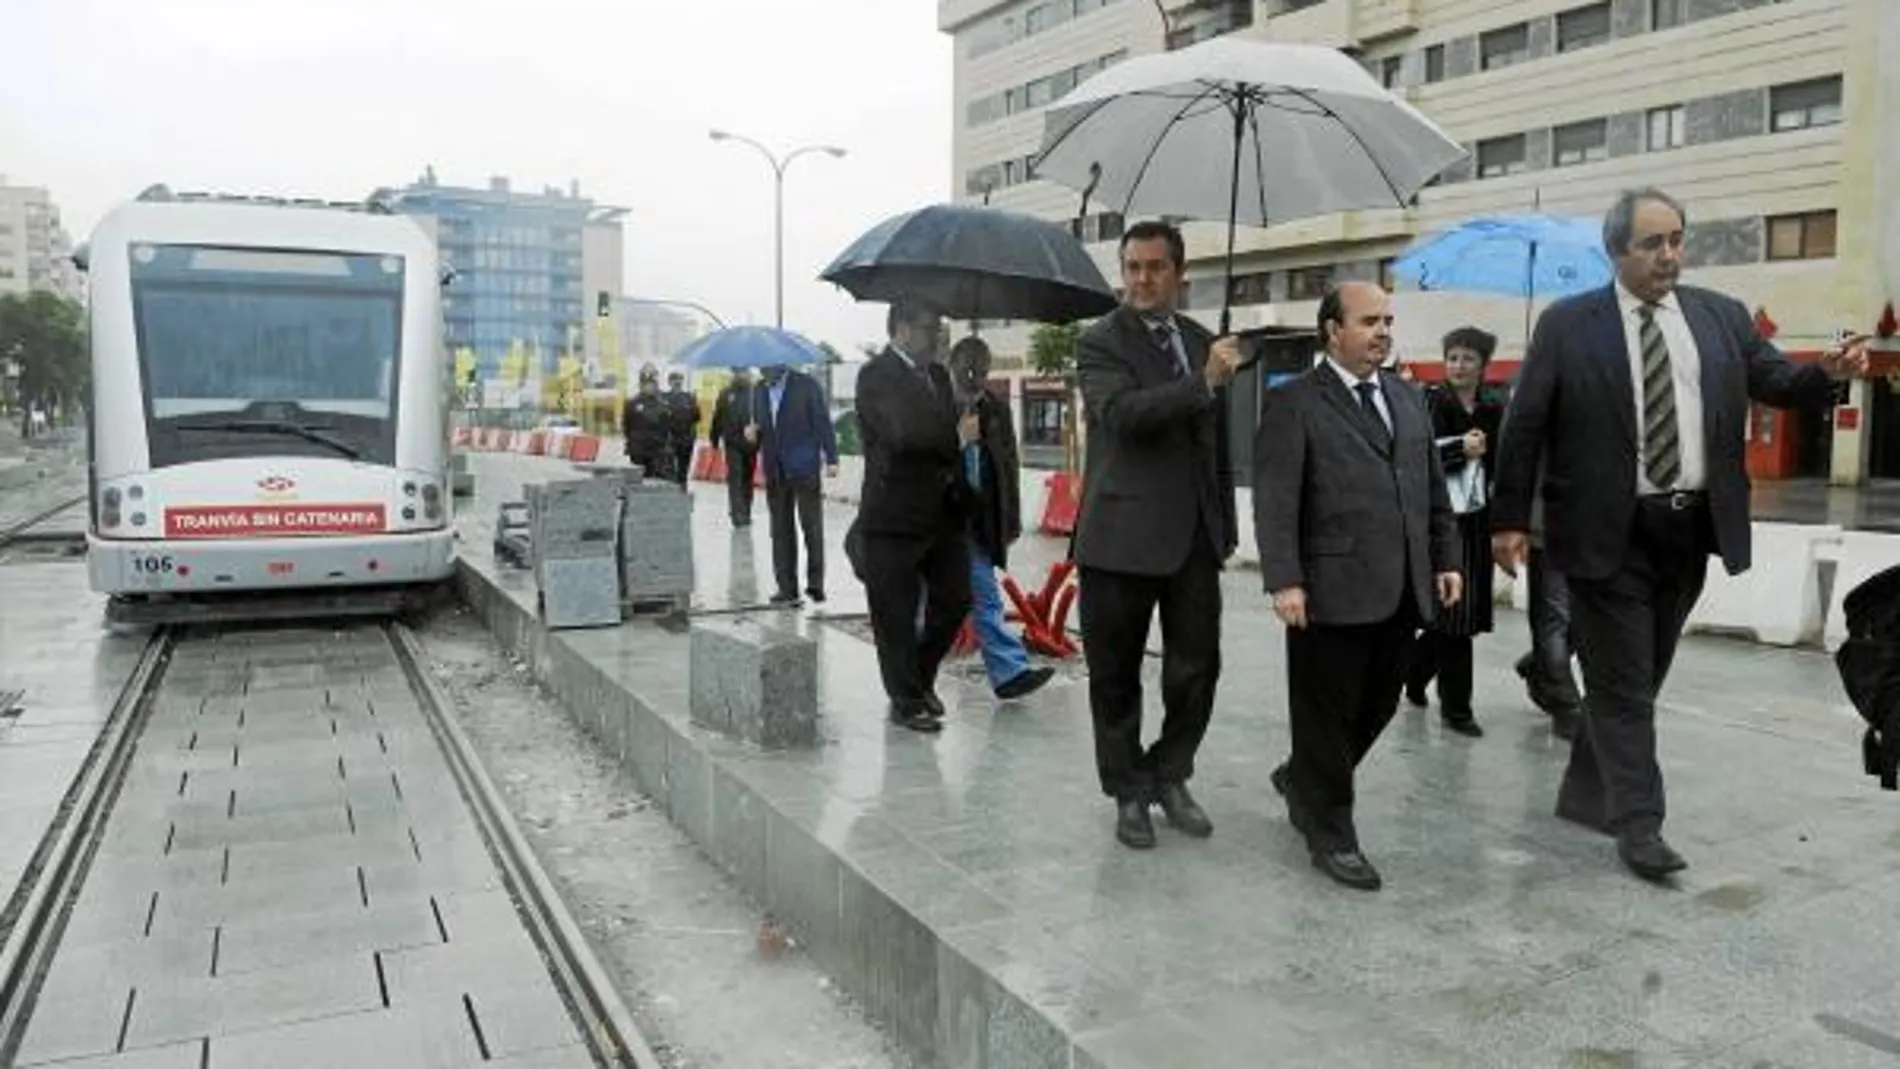 El secretario de Estado, Gaspar Zarrías; el senador Juan Espadas, con paraguas; y el edil de Movilidad, Francisco Fernández, desprotegido